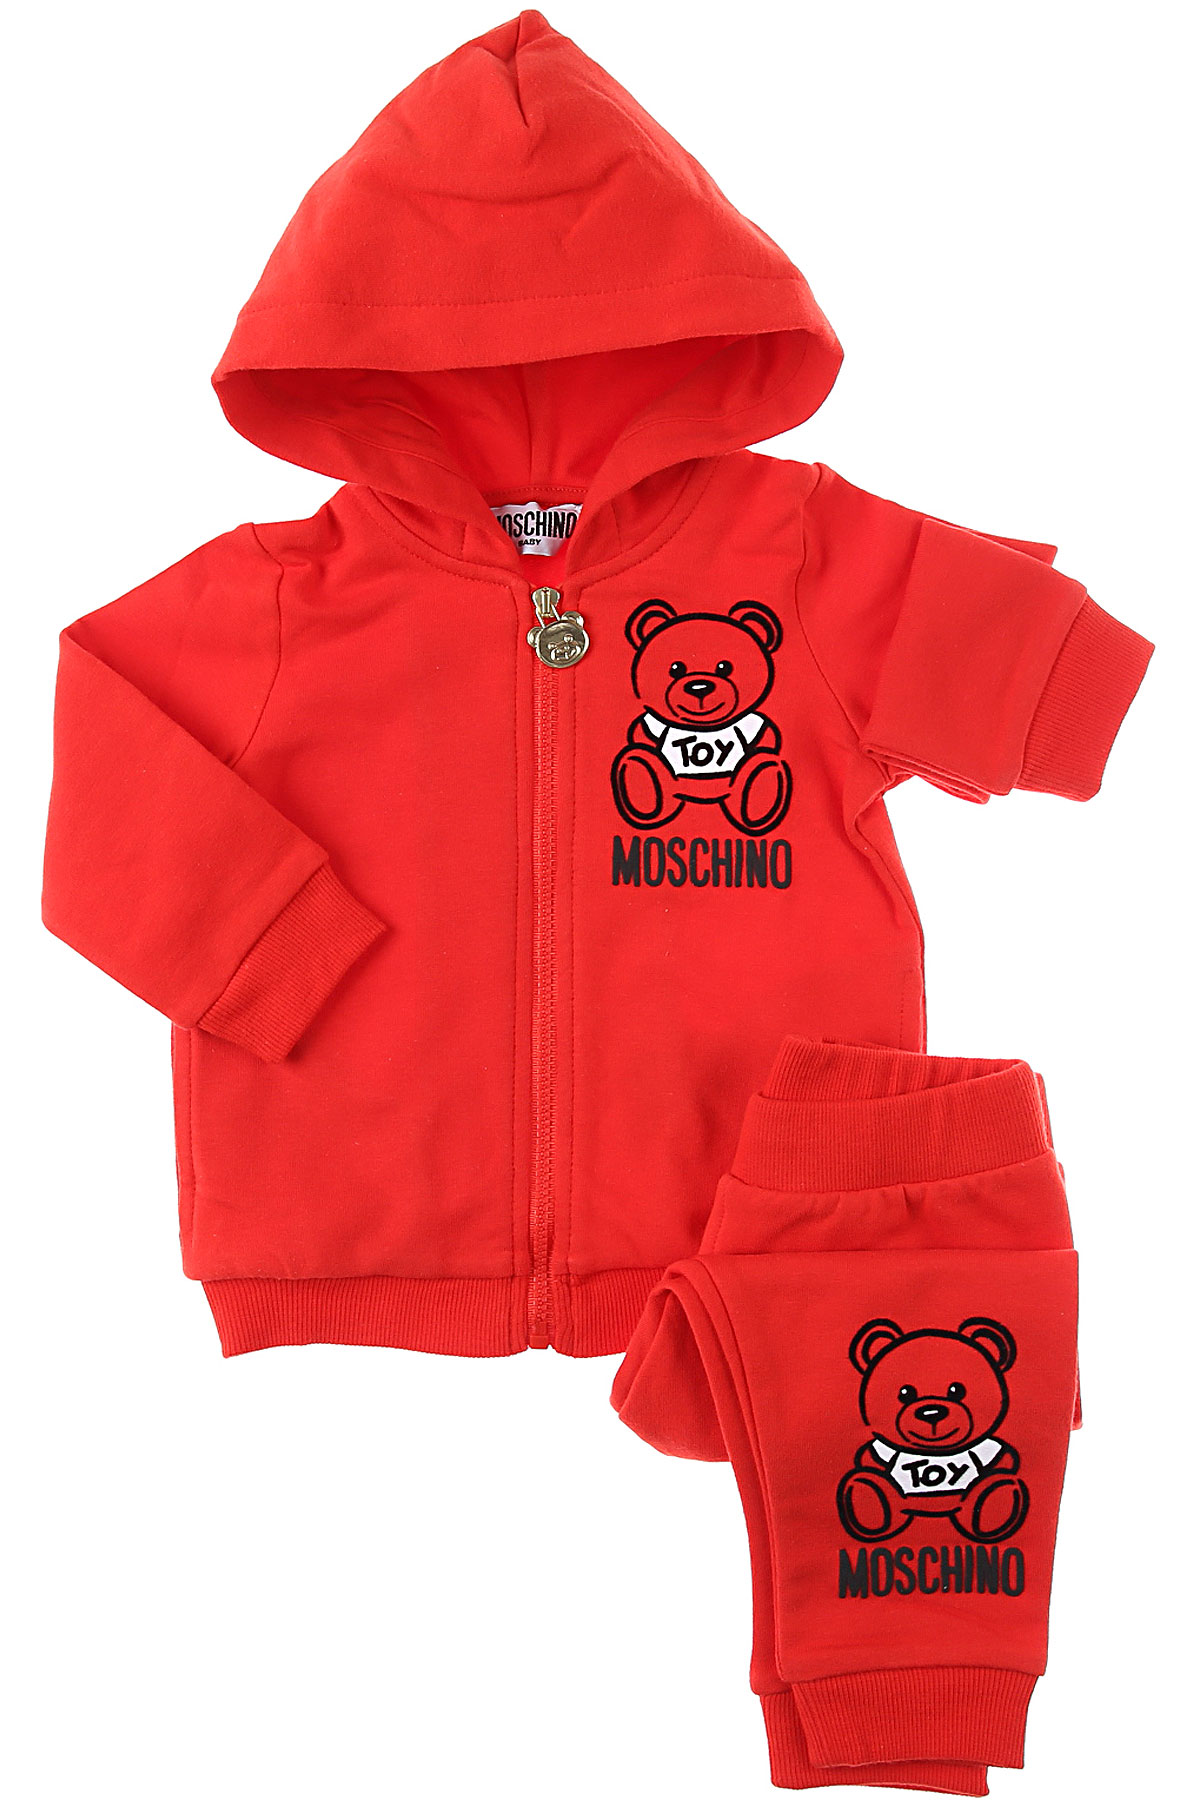 Moschino Baby Set für Jungen Günstig im Sale, Rot, Baumwolle, 2017, 12 M 18M 24M 2Y 3Y 6M 9M